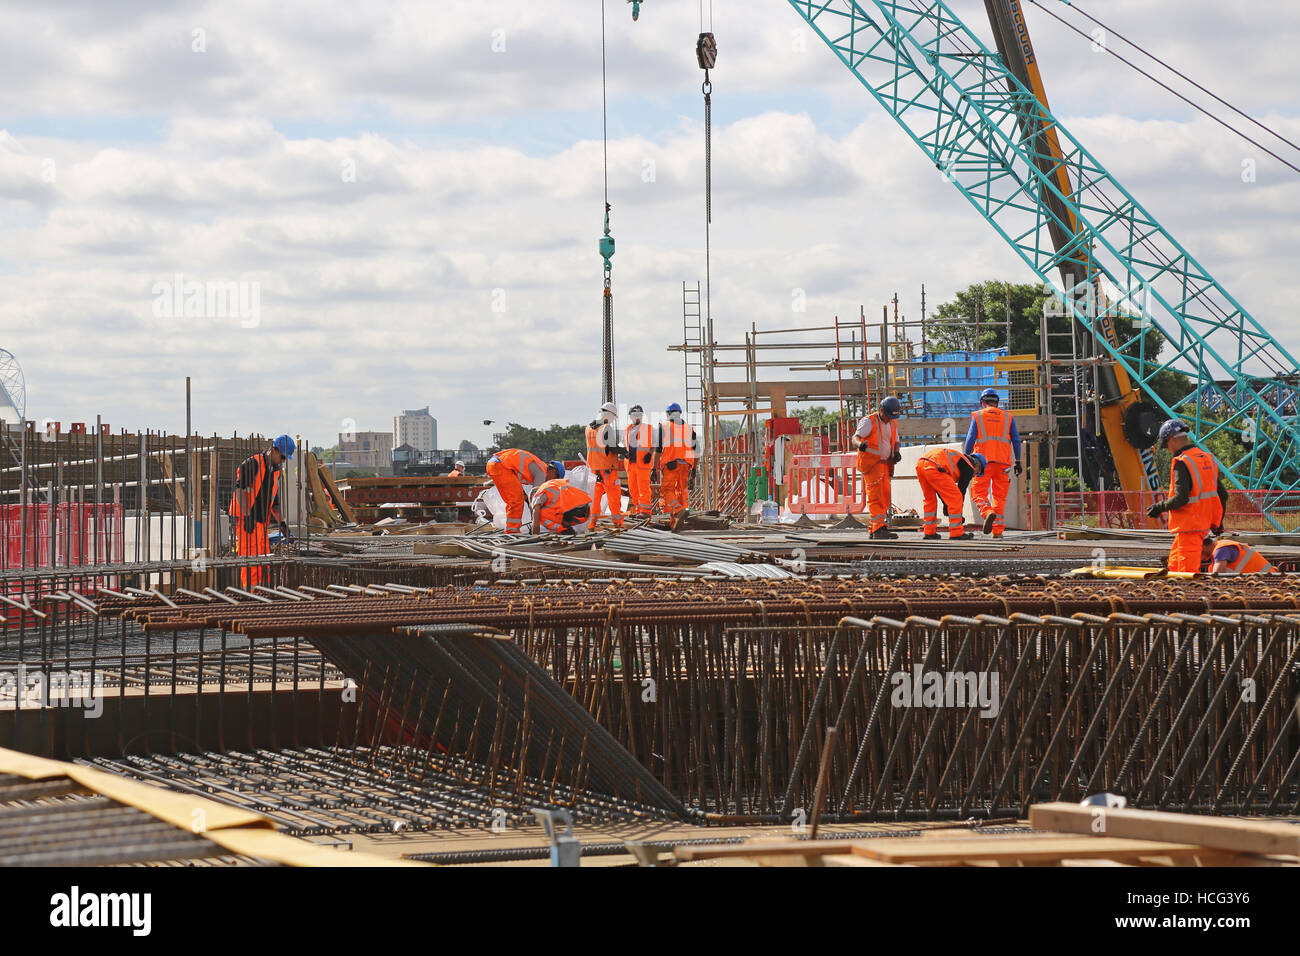 Eine Stahlbeton-Eisenbahnbrücke im Bau in Bermondsey, Süd-London, UK. Arbeiter bereiten Stahlkonstruktionen vor dem Beton gießen. Stockfoto